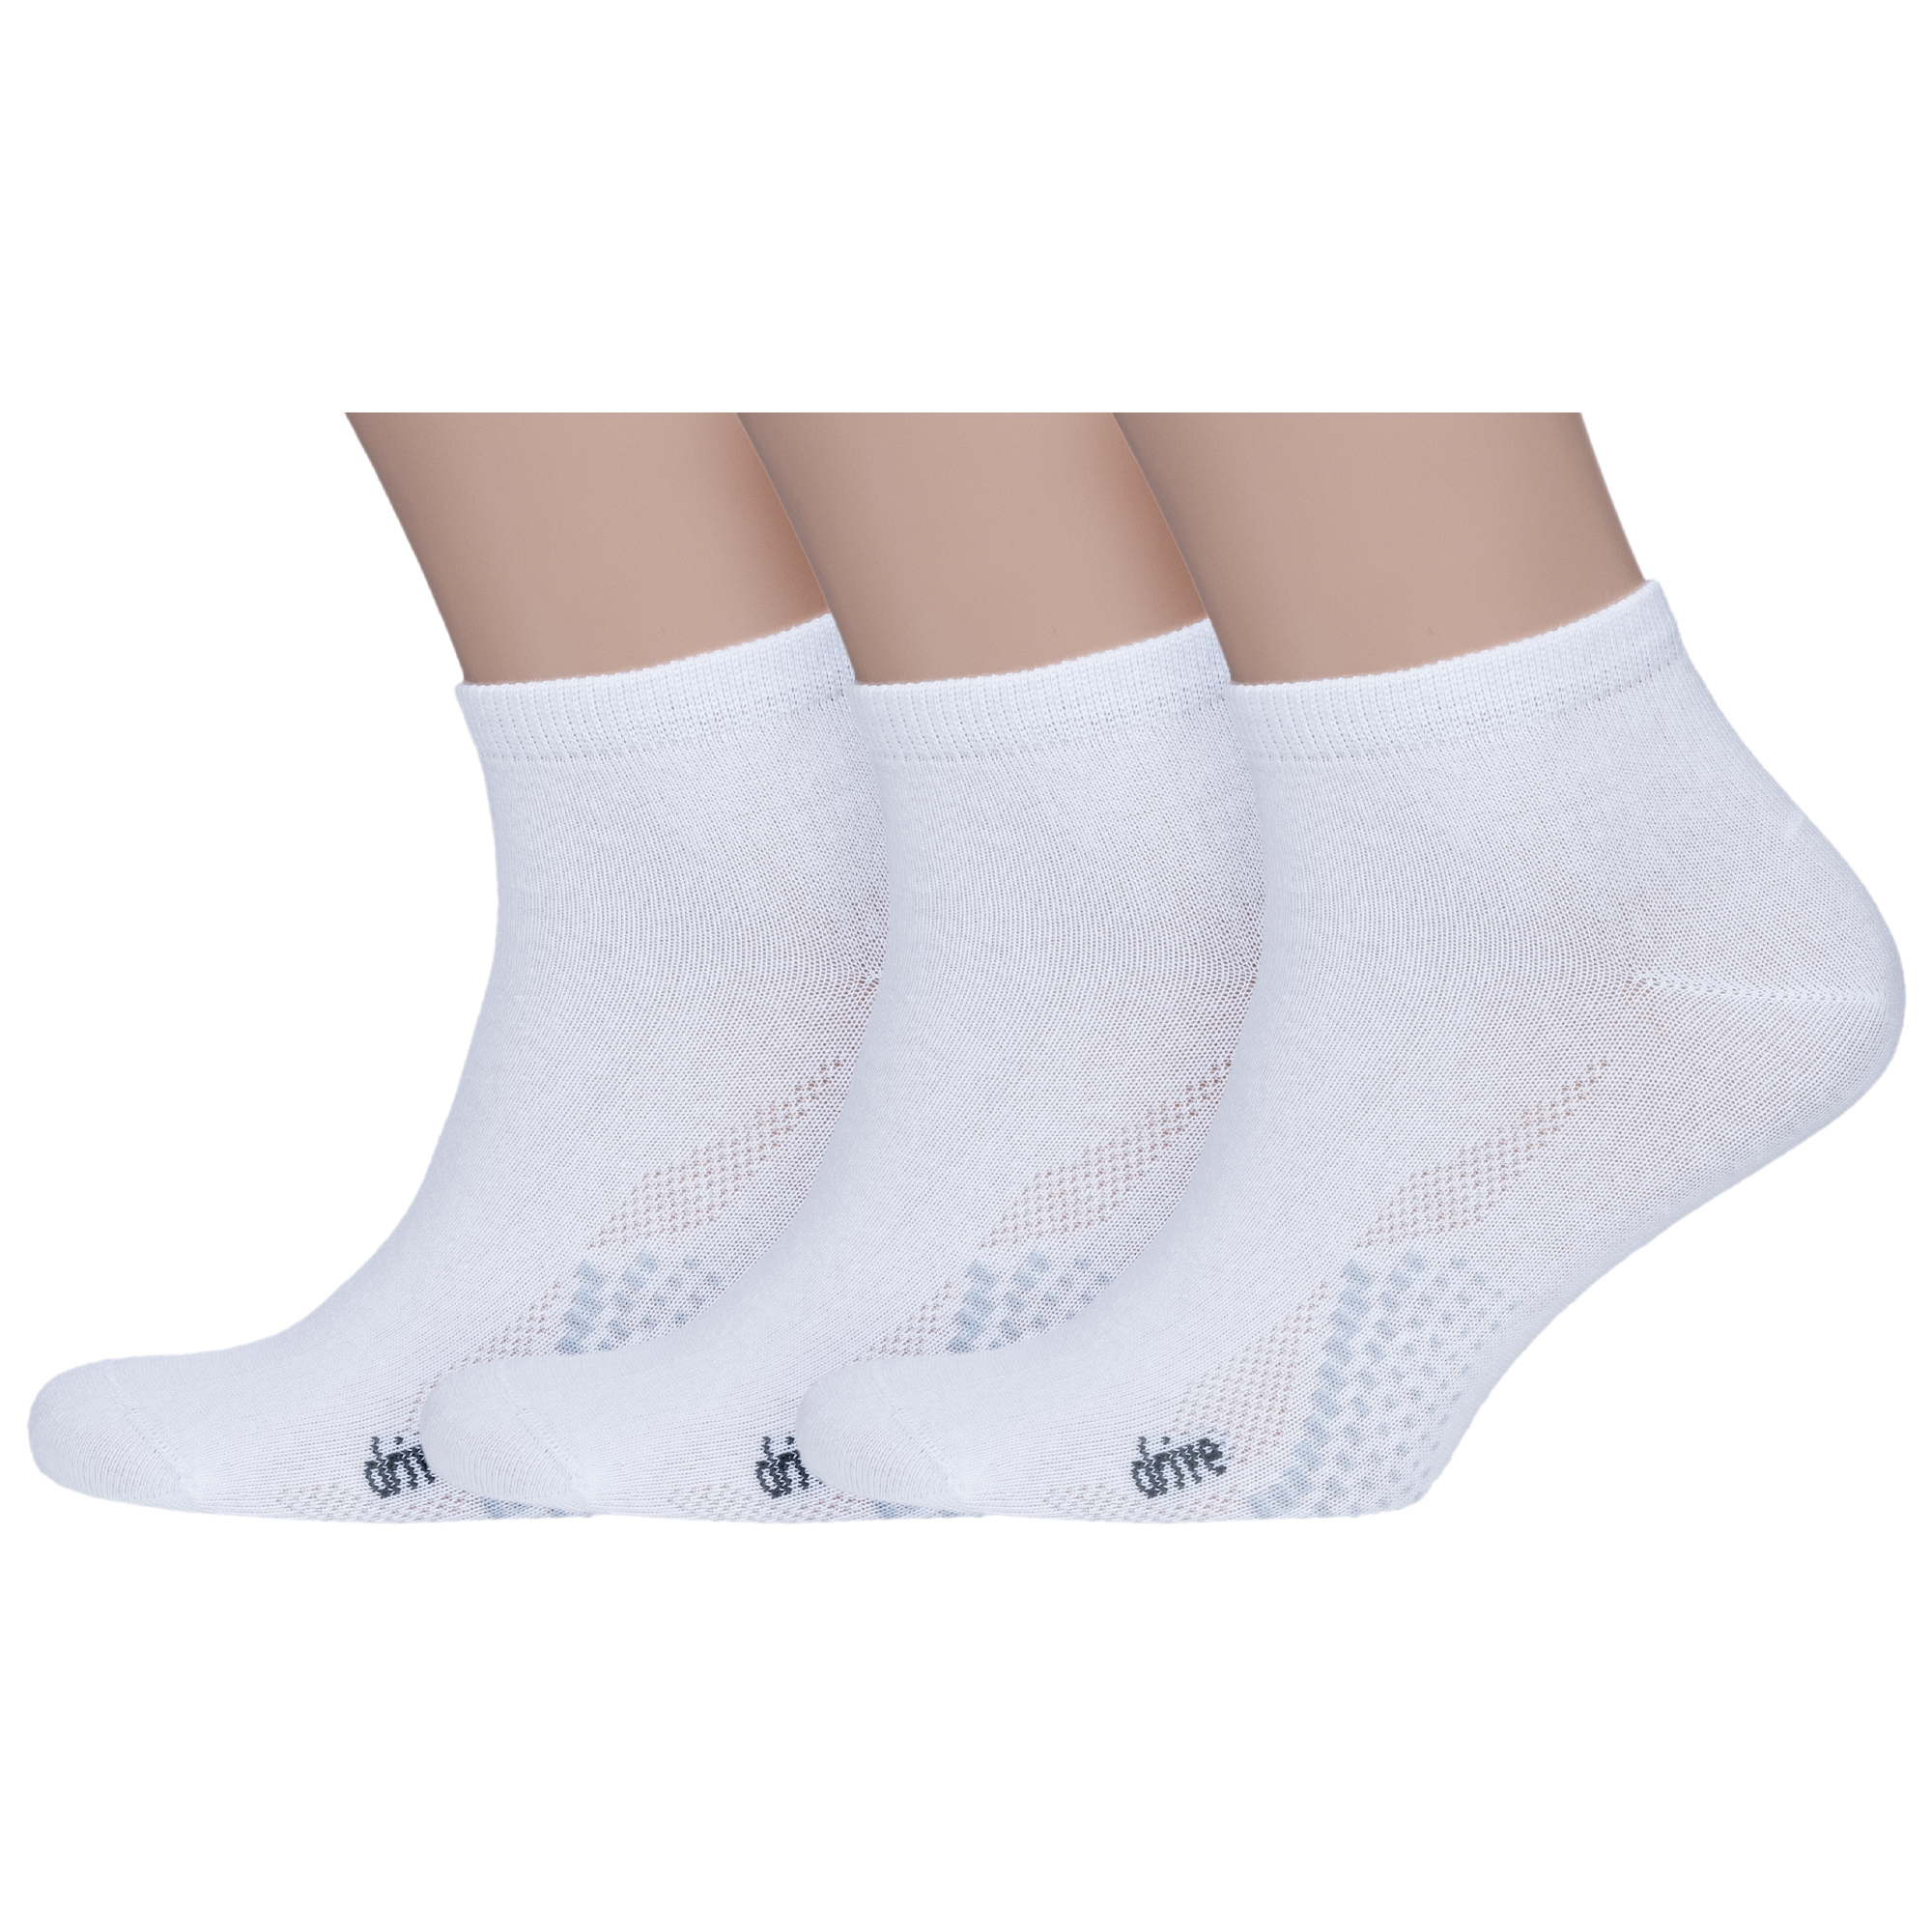 Комплект носков мужских НАШЕ 3-522С1-3 белых 25